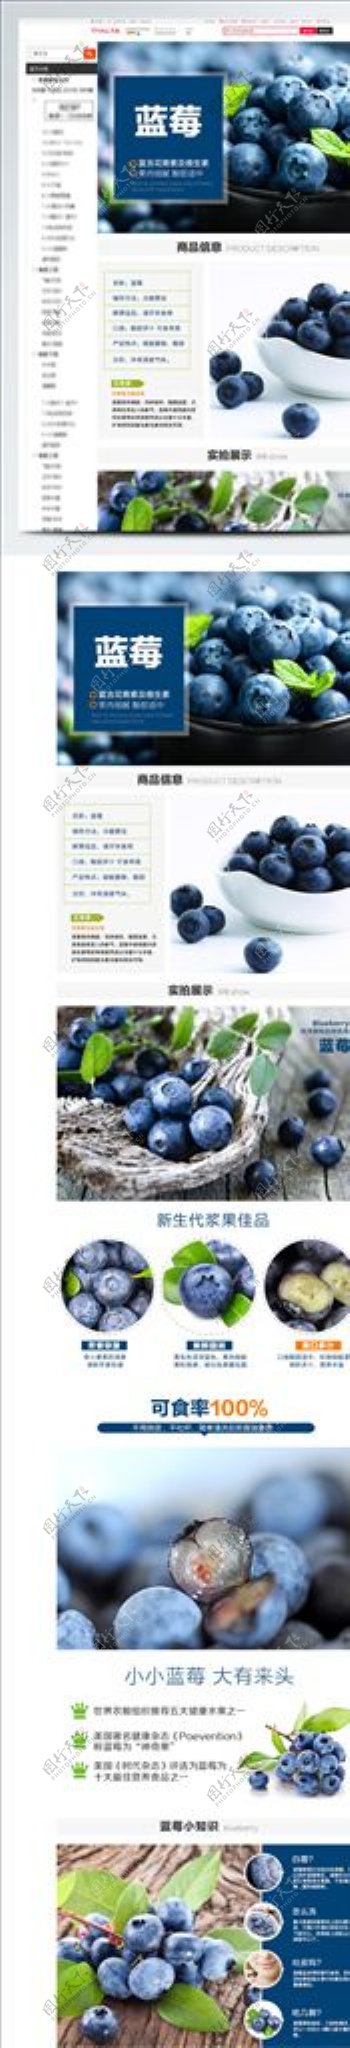 食品宣传详情图蓝莓